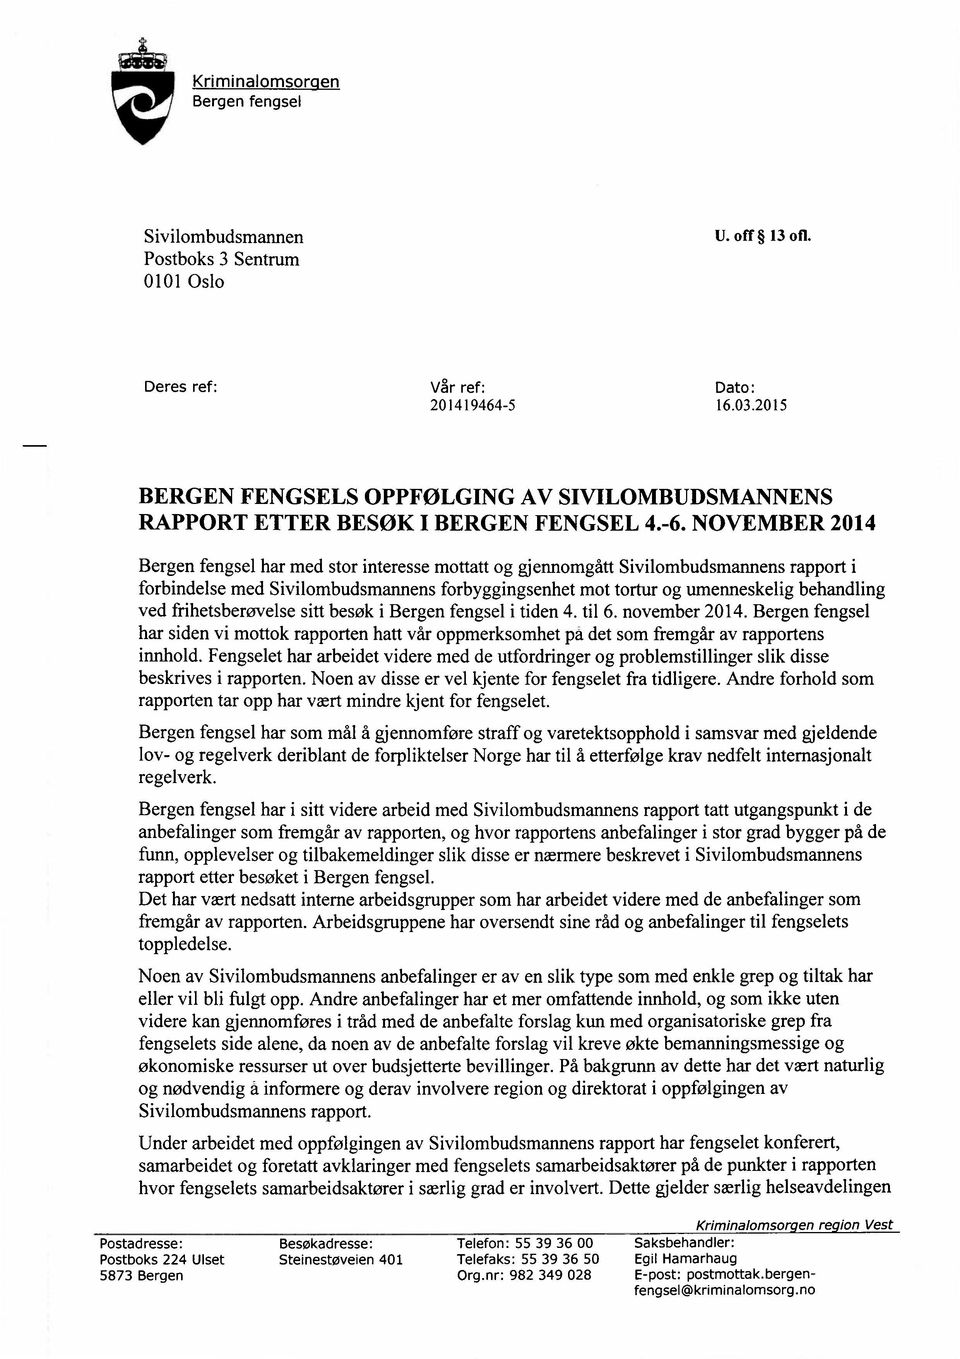 NOVEMBER 2014 Bergen fengsel har med stor interesse mottatt og gjennomgått Sivilombudsmannens rapport i forbindelse med Sivilombudsmatmens forbyggingsenhet mot tortur og umenneskelig behandling ved